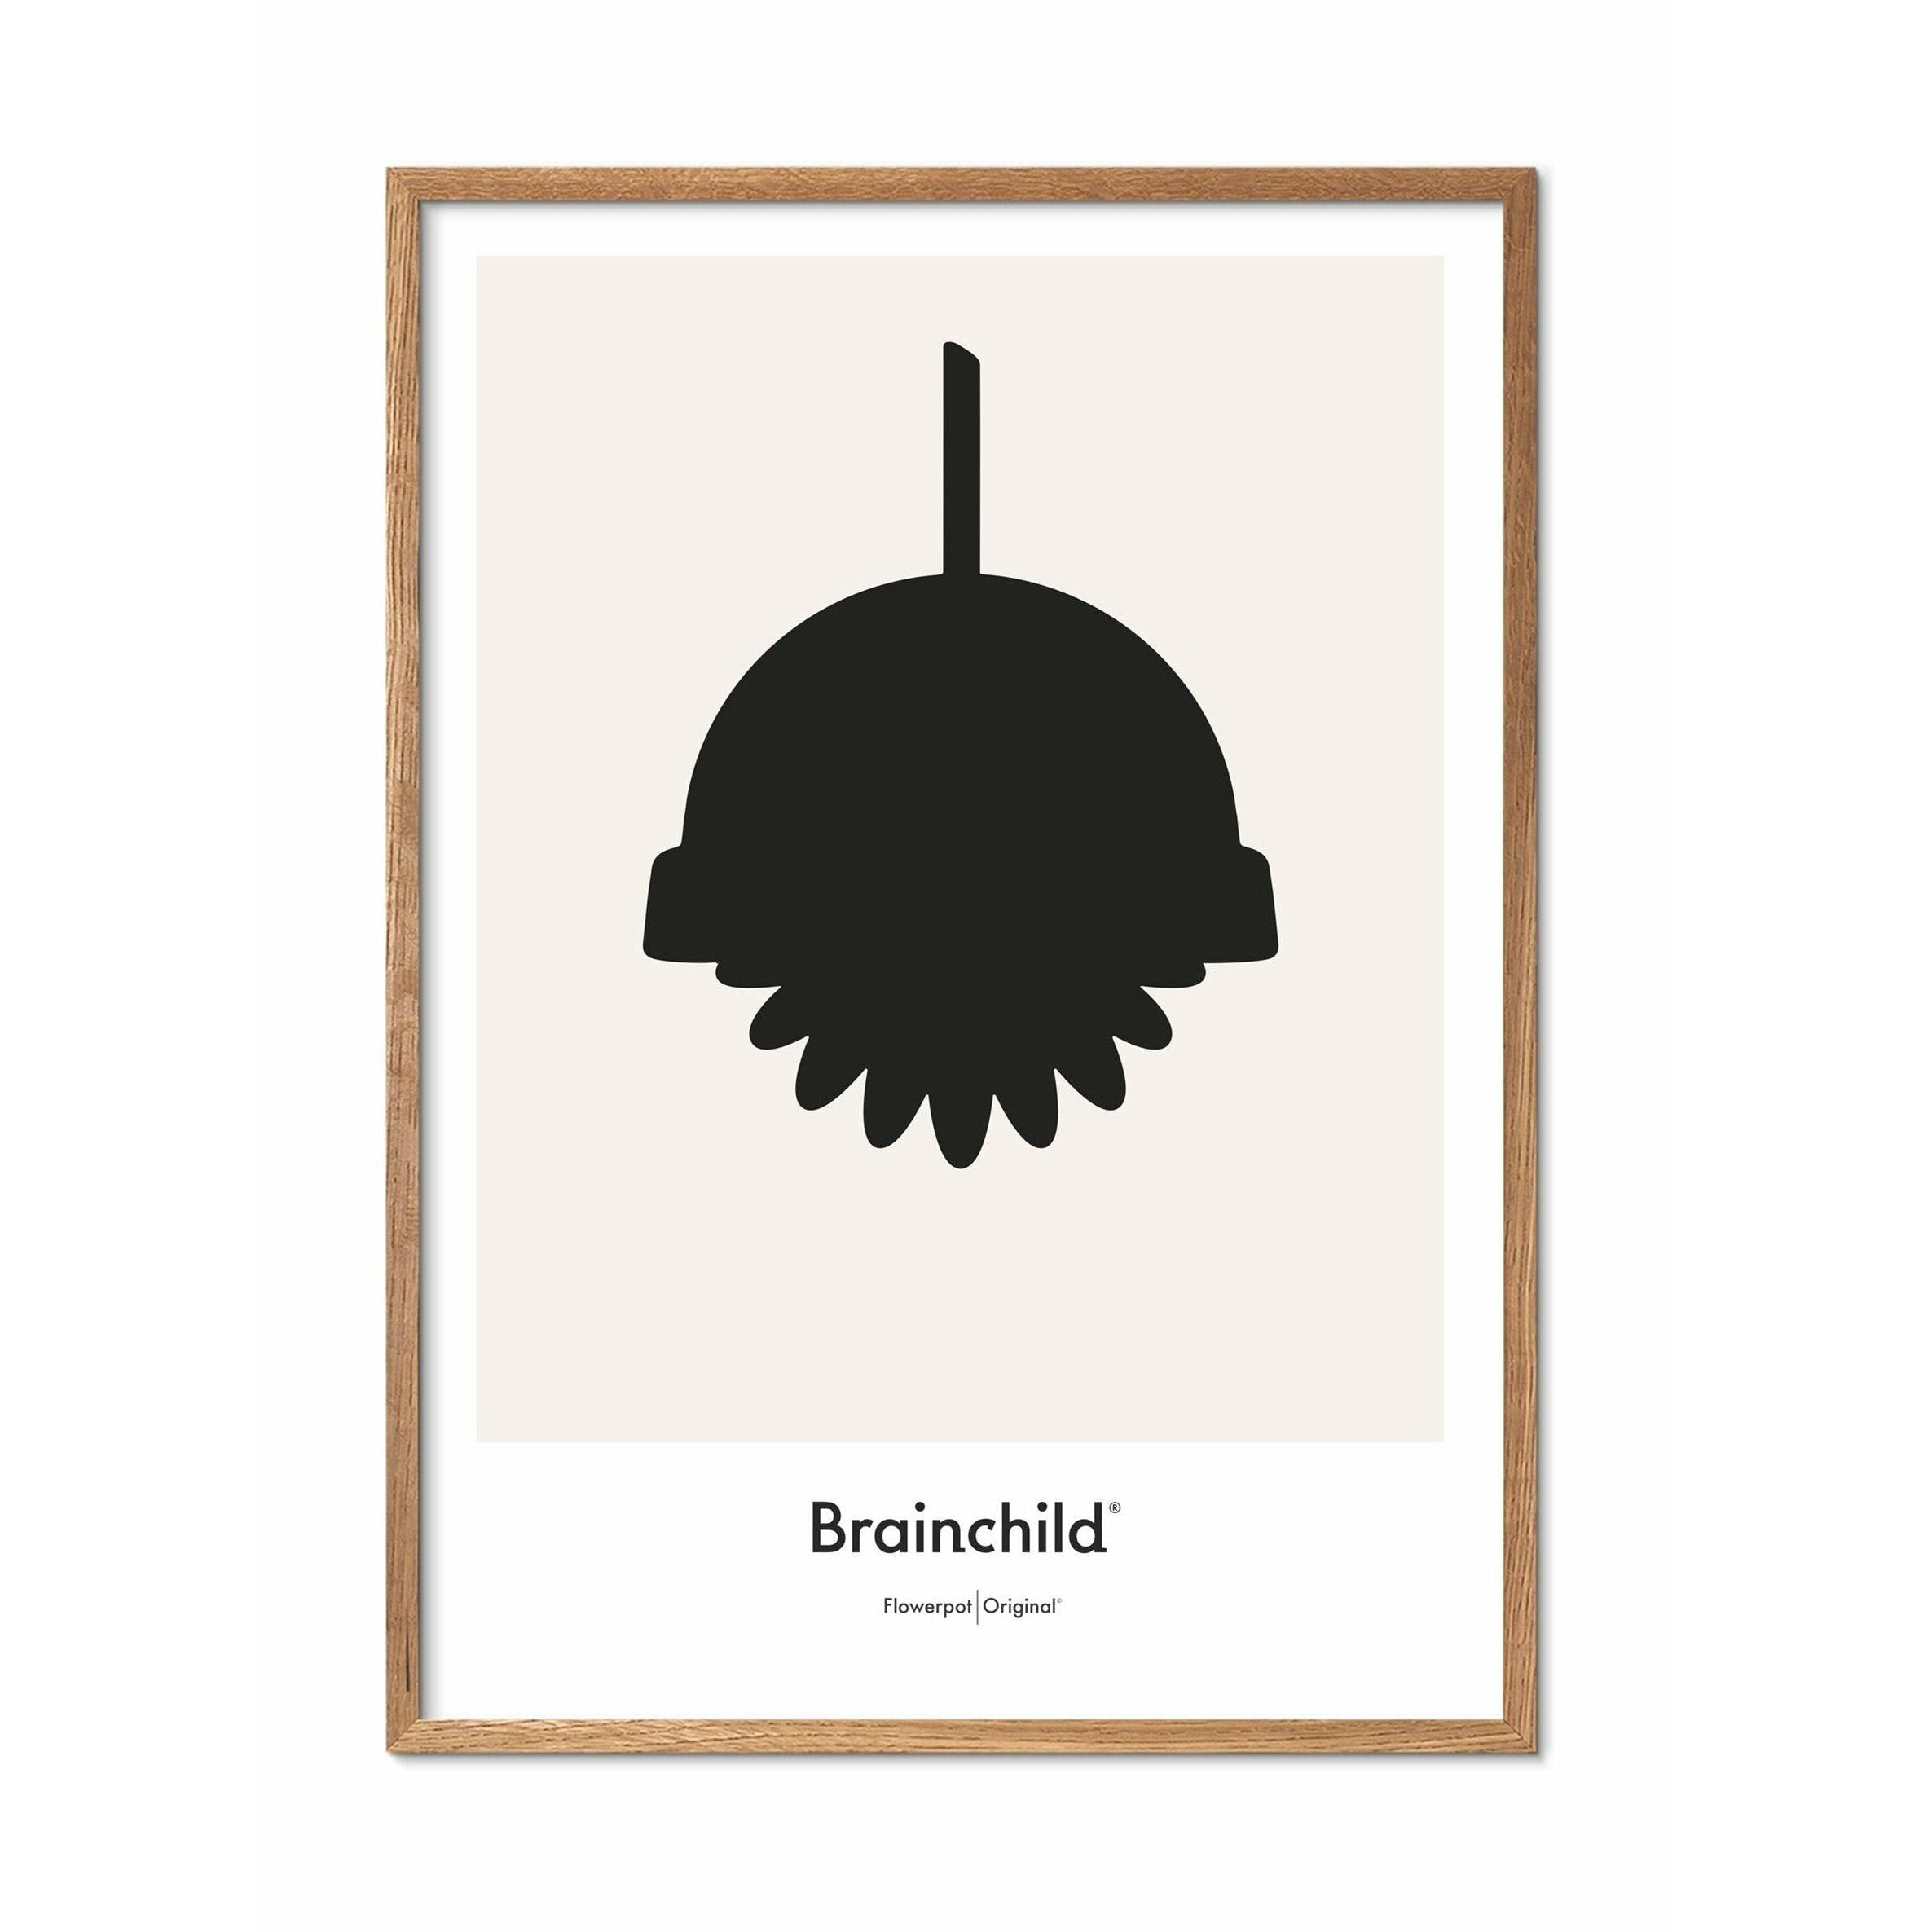 Brainchild Flower Pot Design Icon Poster, Frame Made of Light Wood 30x40 cm, Gray